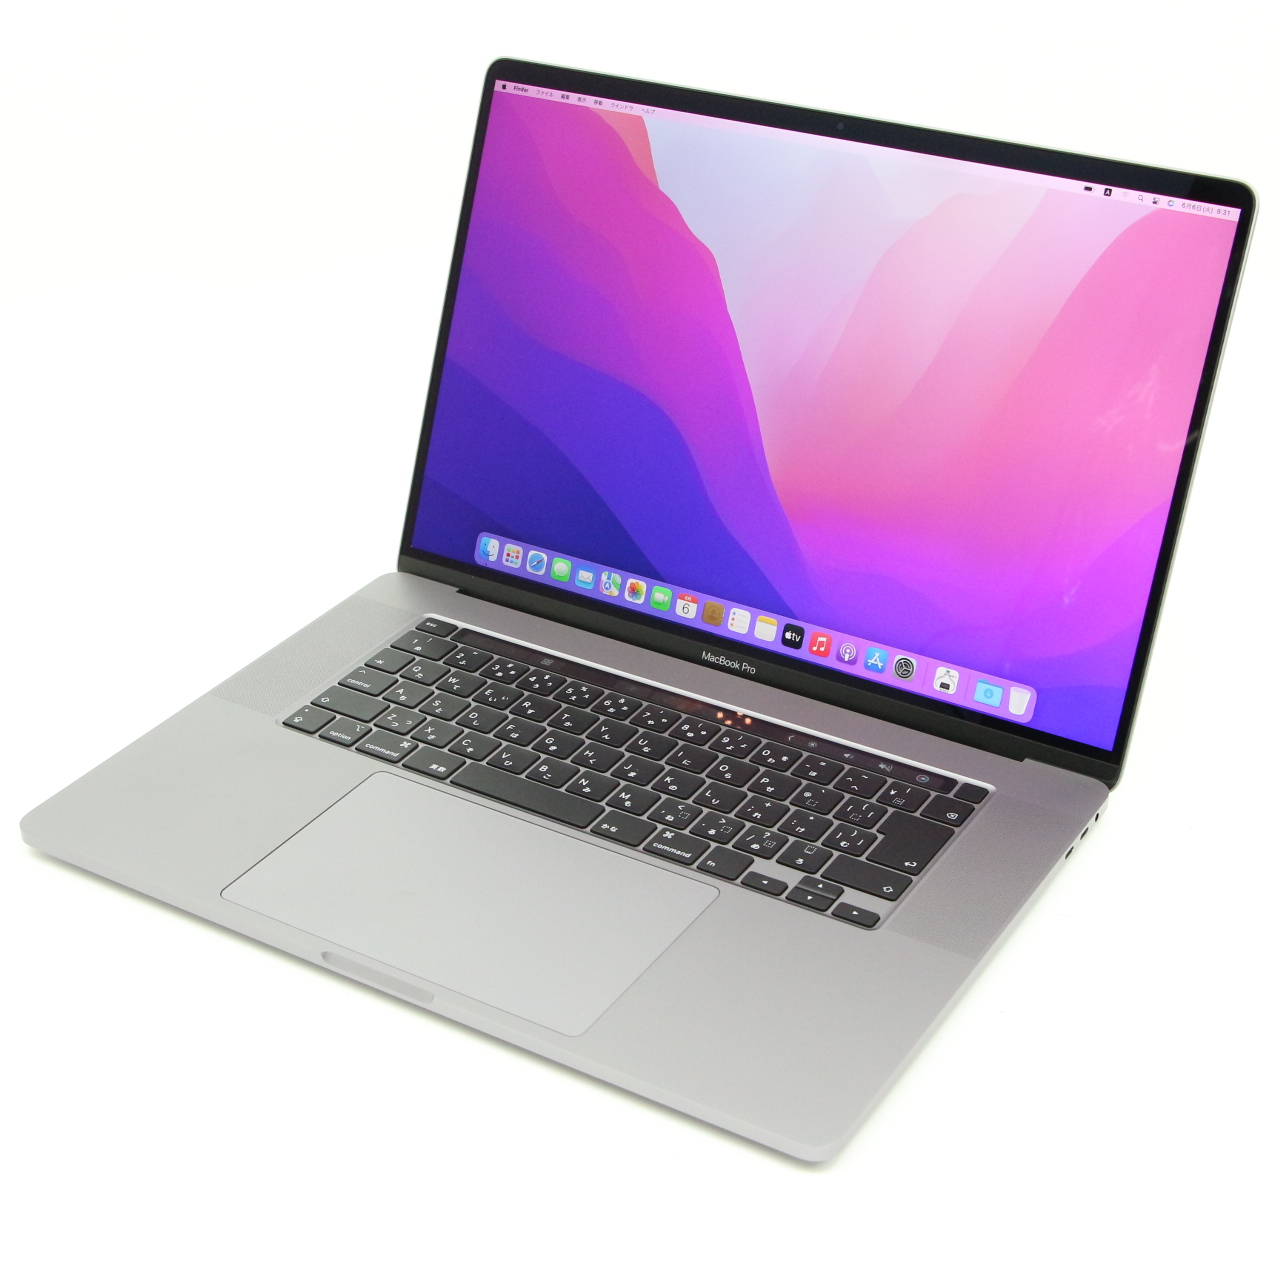 Macbook pro 2019 13インチ i7 16GB SSD512GB